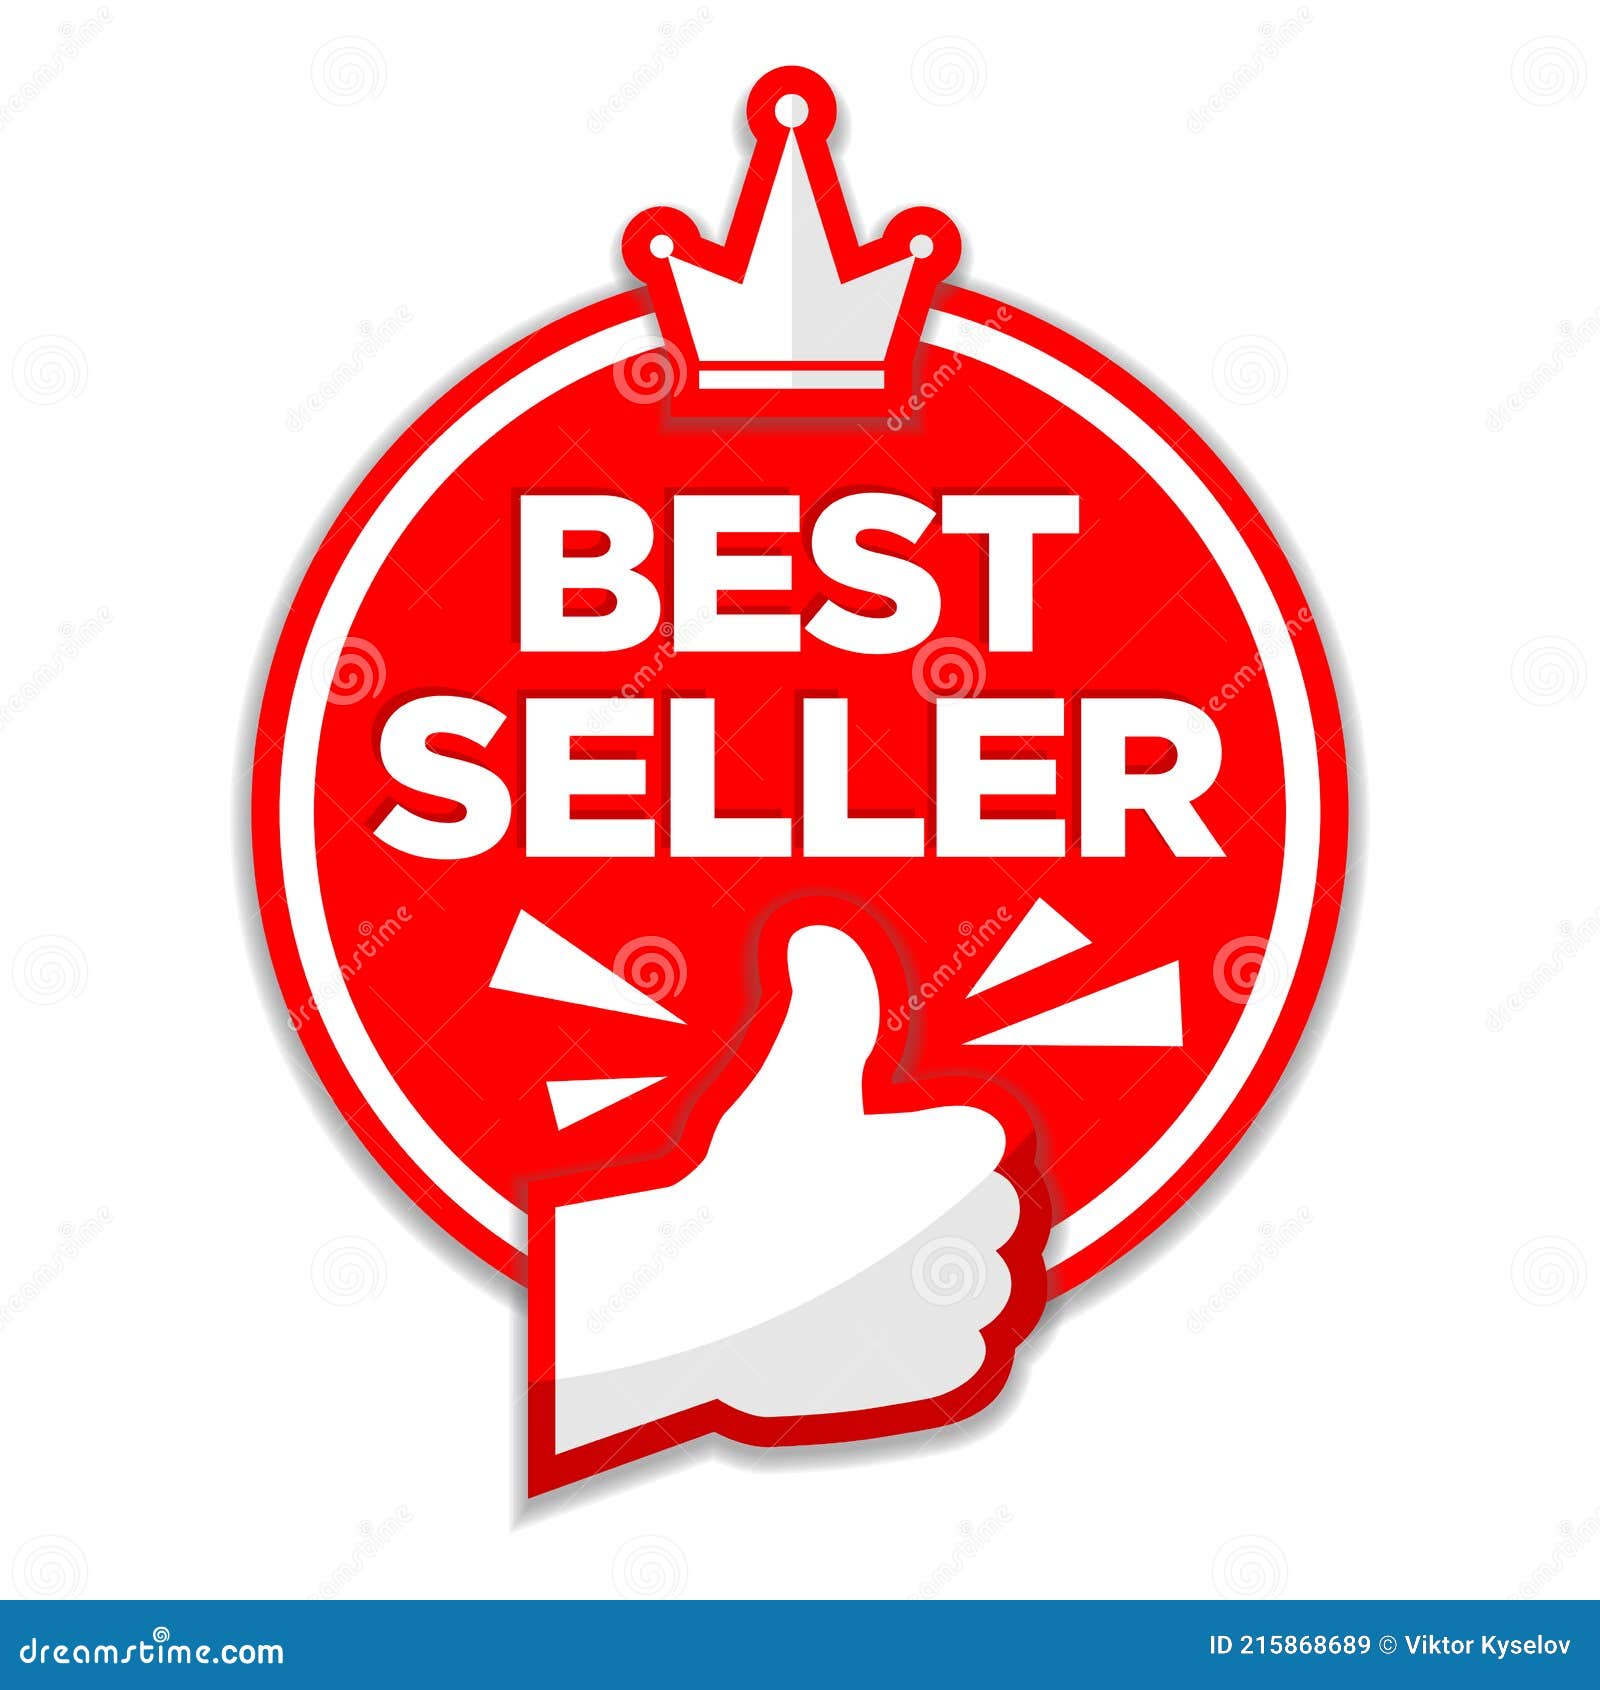 Best seller round sticker stock vector. Illustration of bestseller